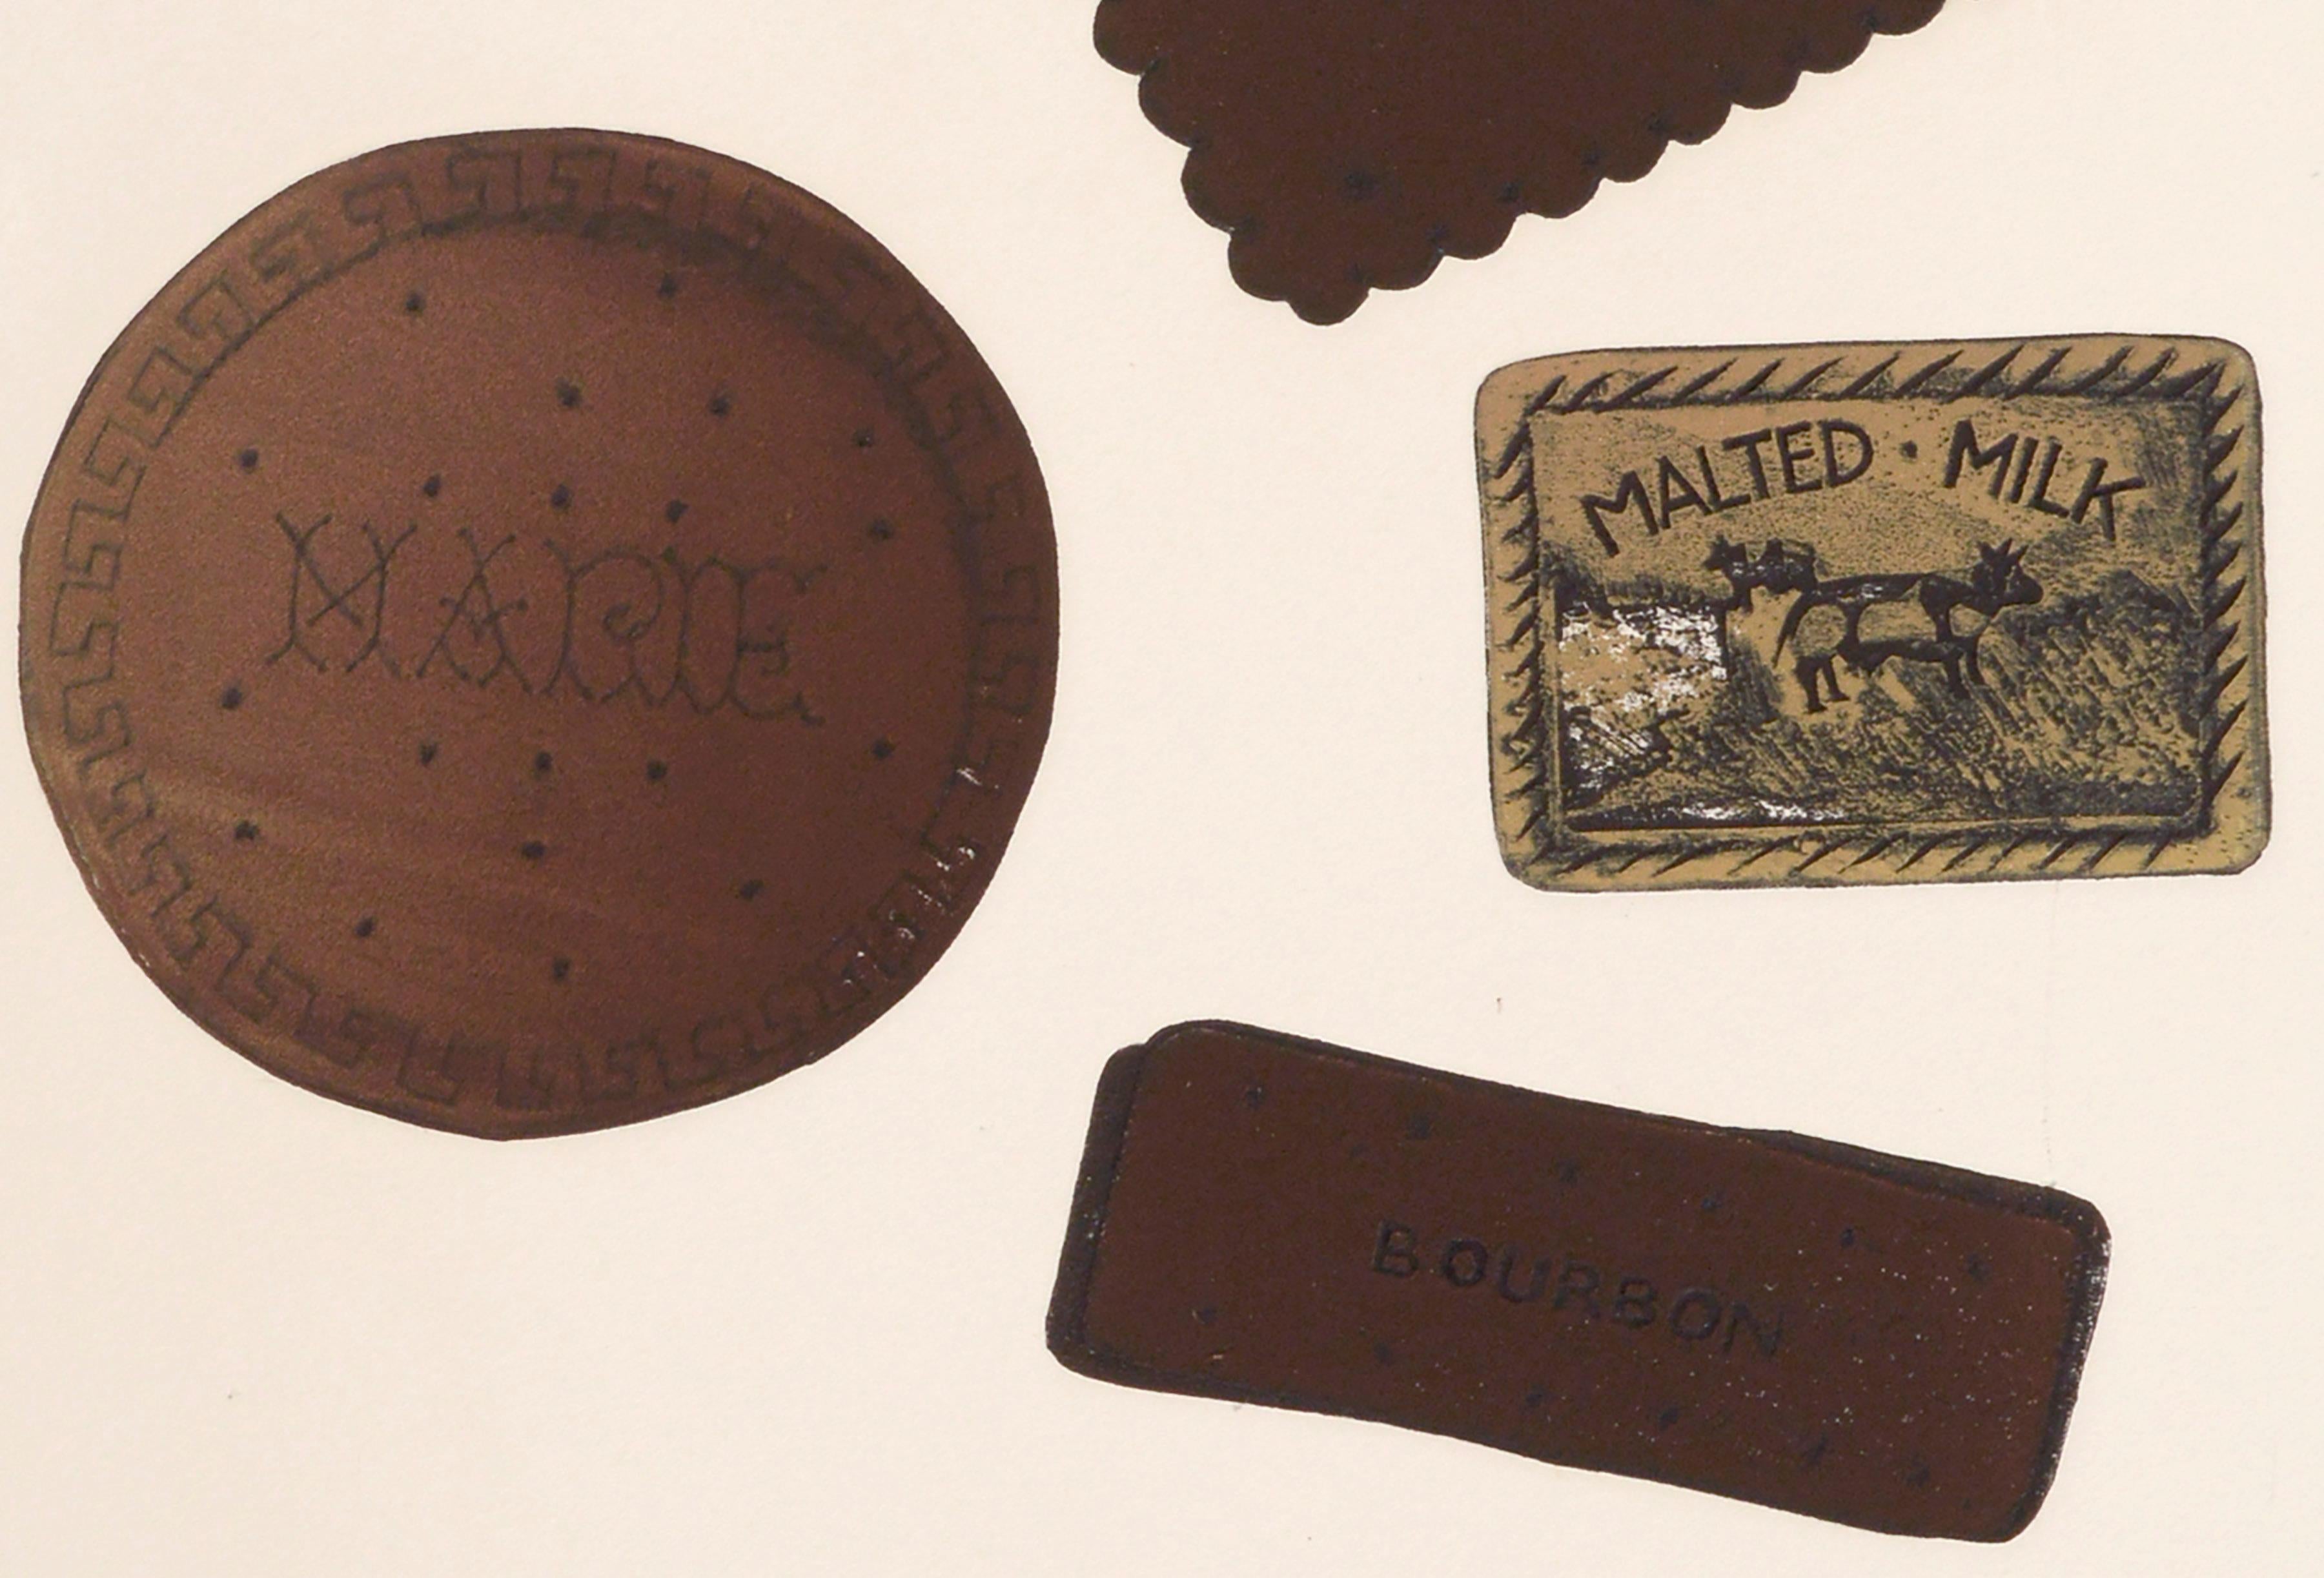 Cette charmante sérigraphie à grande échelle de 1973 représentant divers biscuits anglais dans des détails précis et maîtrisés par Marc Foster Grant (américain, né en 1947) est parfaite pour une boulangerie ou pour les amateurs de biscuits. Signé et